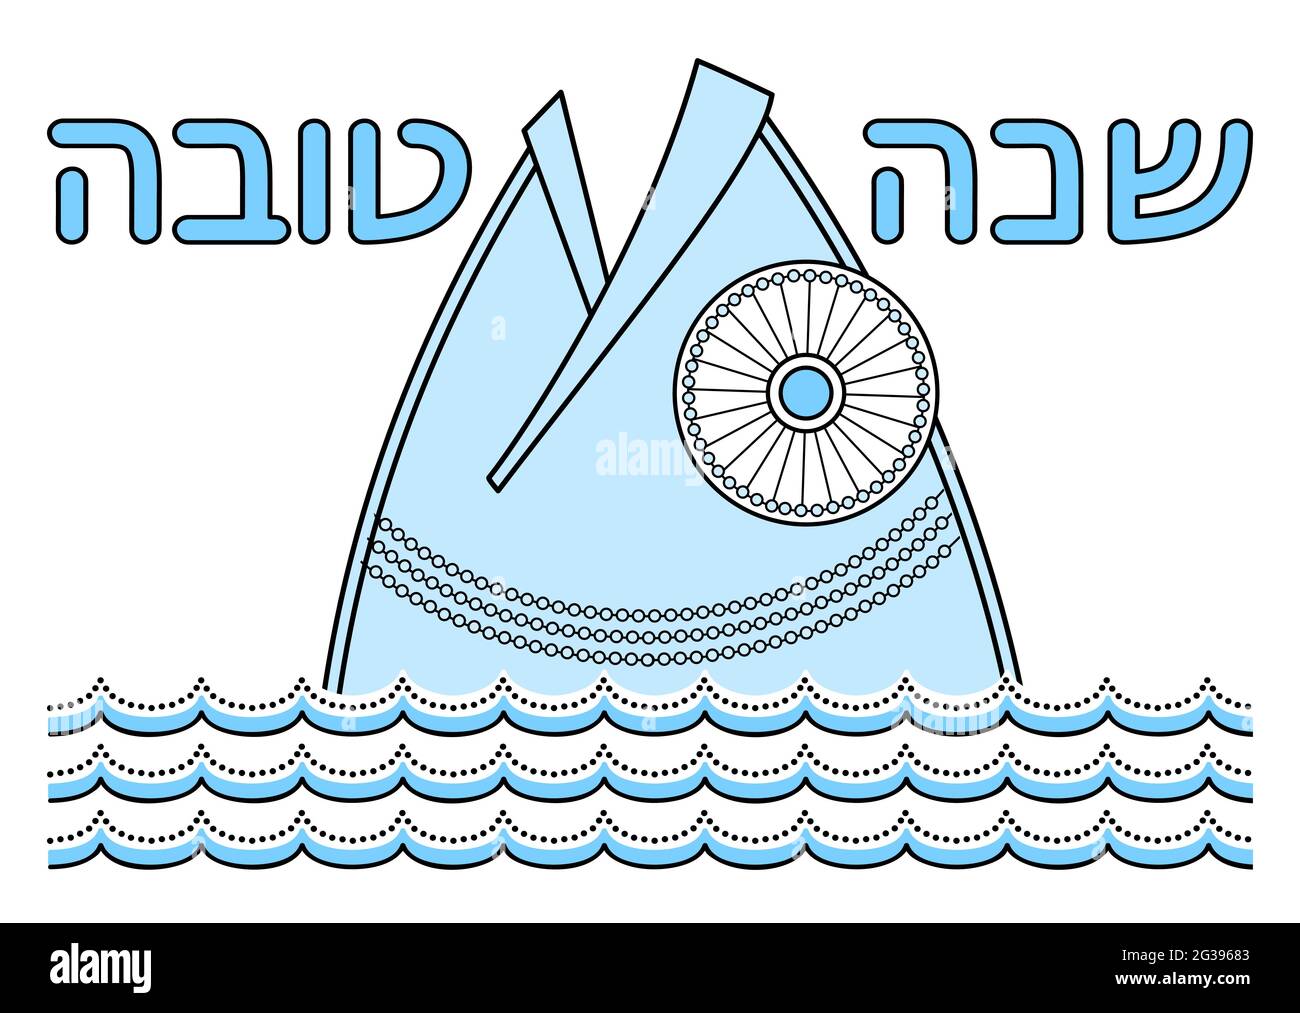 Feliz año nuevo judío (Rosh Hashanah) tarjeta de felicitación. Deseo tradicional: Tener un buen año. La cabeza del pez mira fuera del agua. Ilustración del Vector